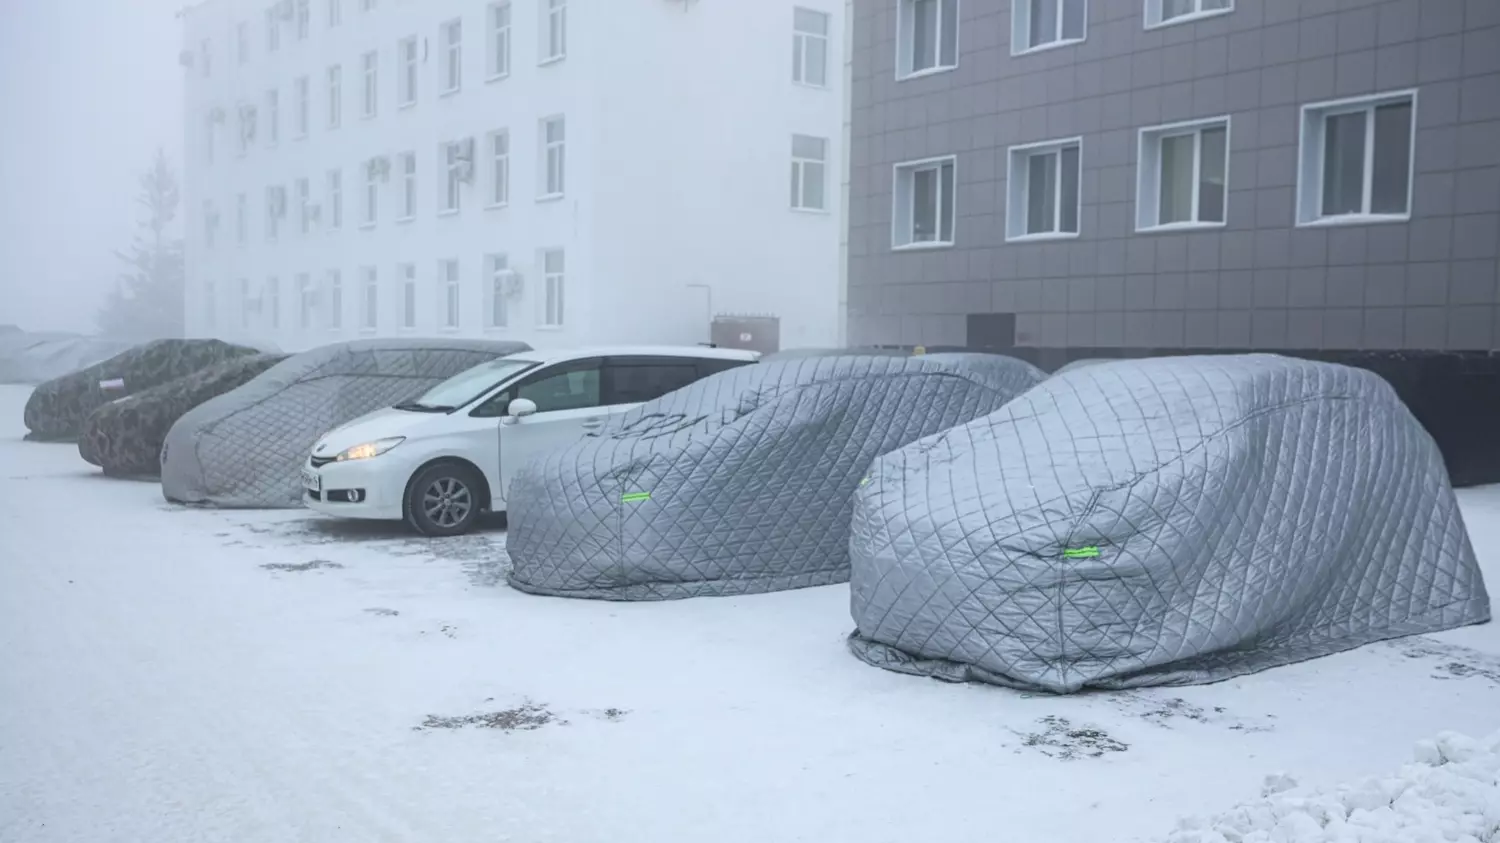 Разрядившийся аккумулятор — одна из частых причин невозможности завести авто в холод. В Якутске в -45 градусов автомобилисты вынуждены укутывать свои автомобили.